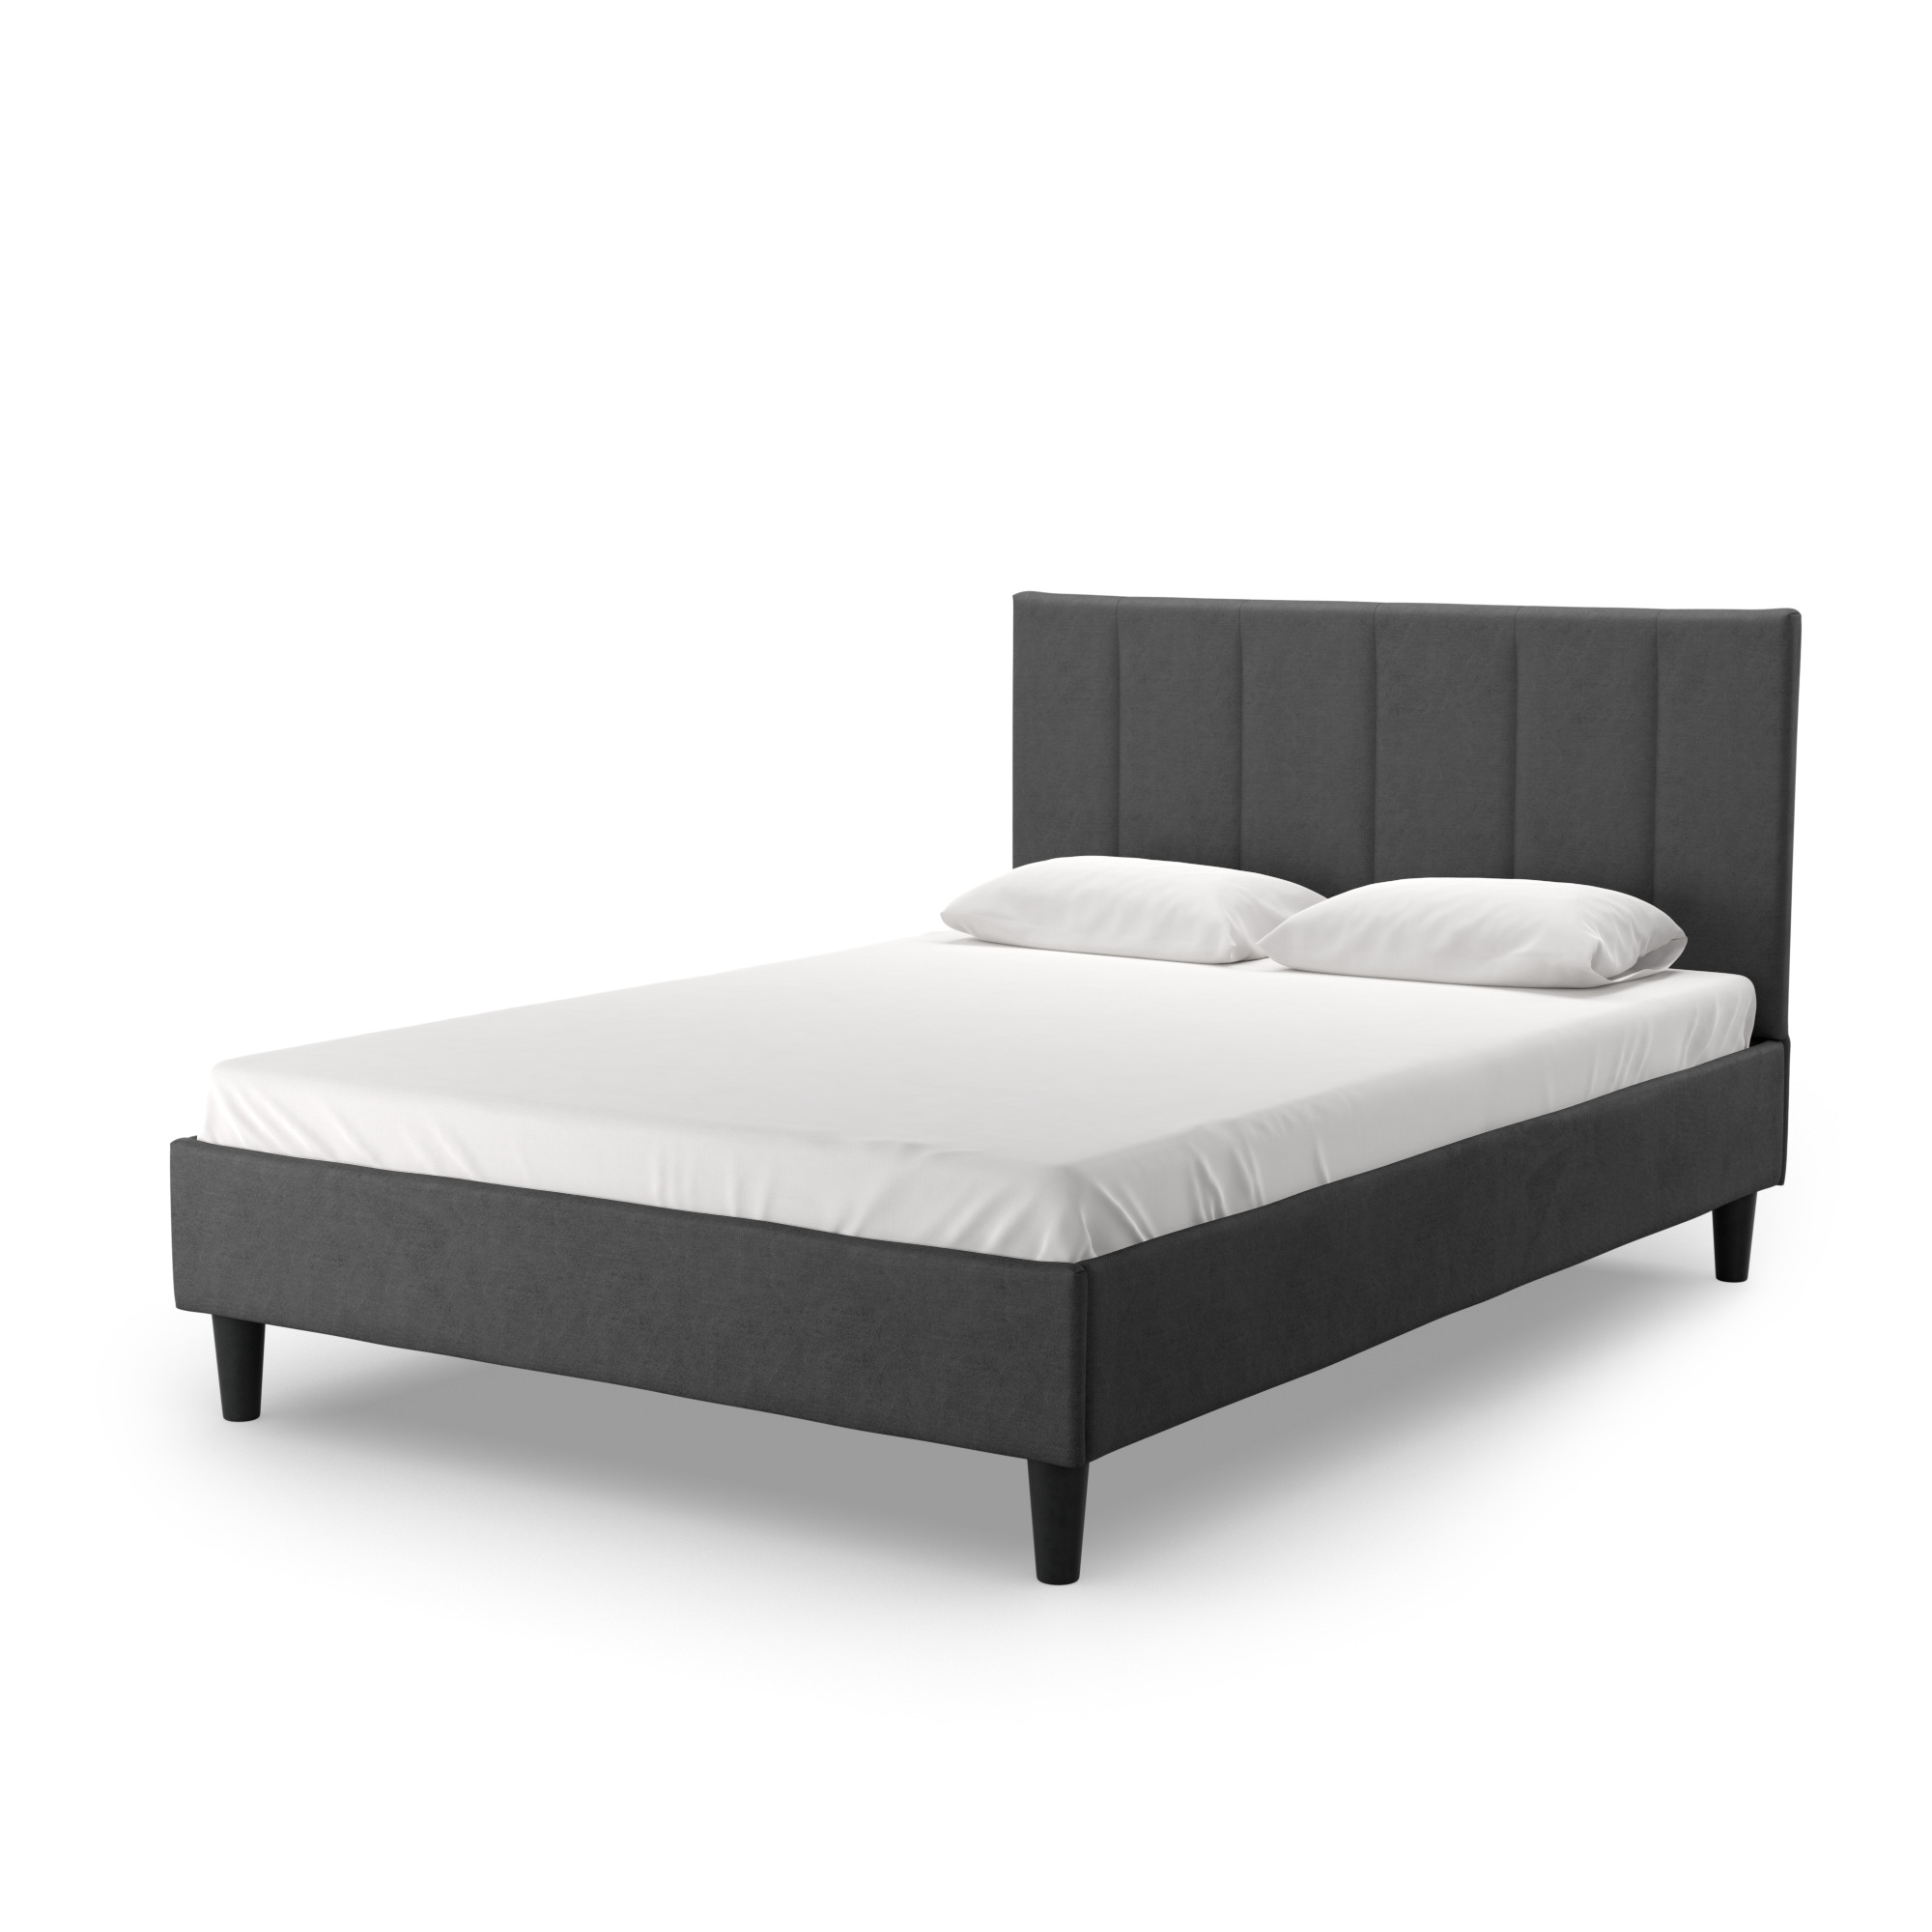 Кровать двуспальная Salotti Джейн 140, велюр, ткань Тако, темно-серый, 140x200